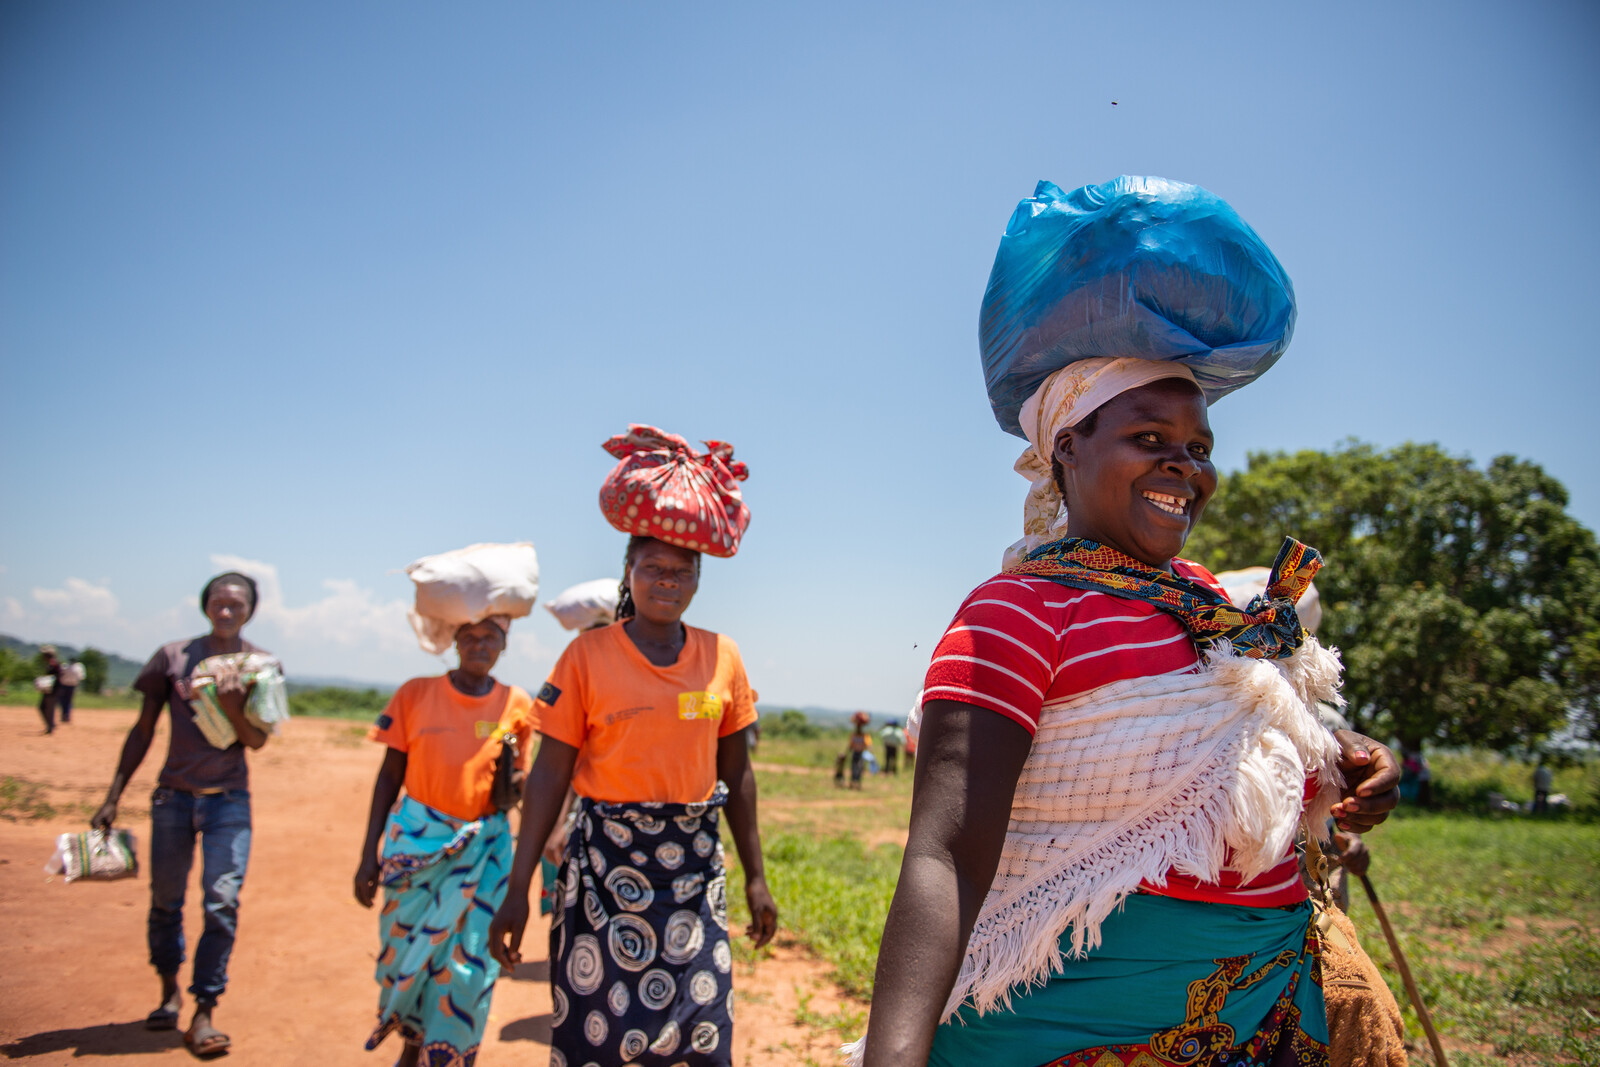 Frauen in Mosambik tragen Bündel auf ihrem Kopf